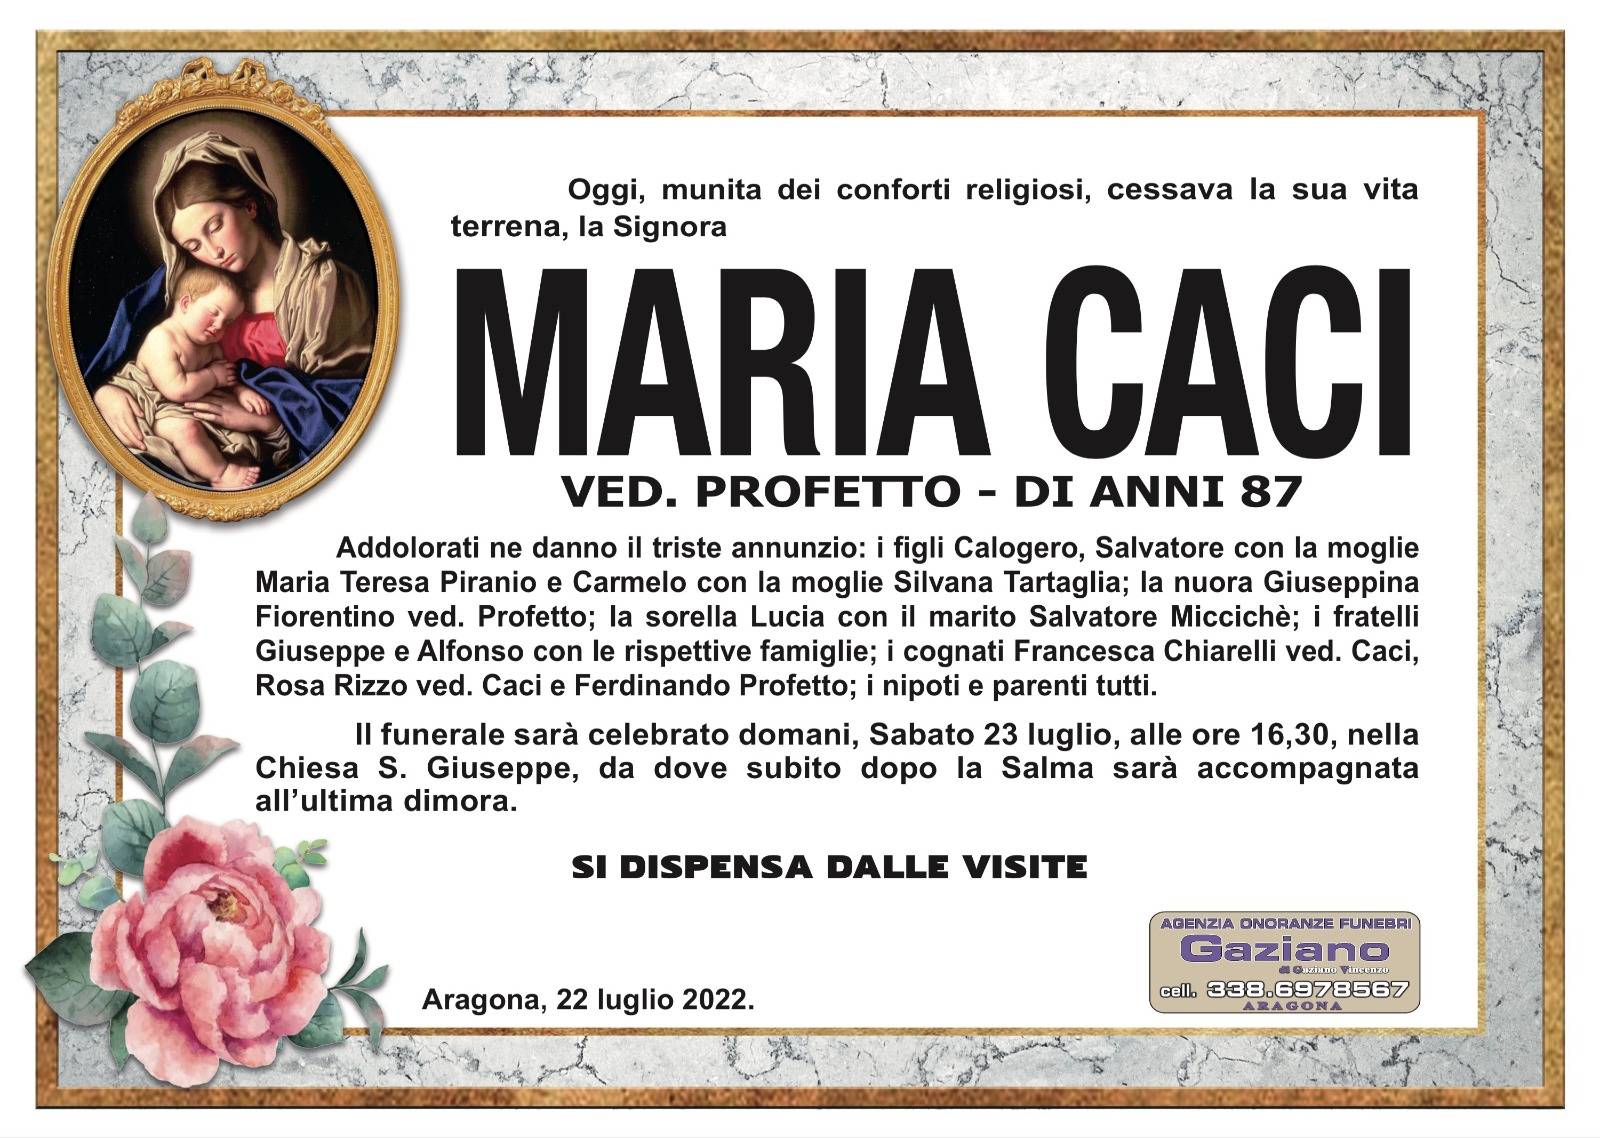 Maria Caci